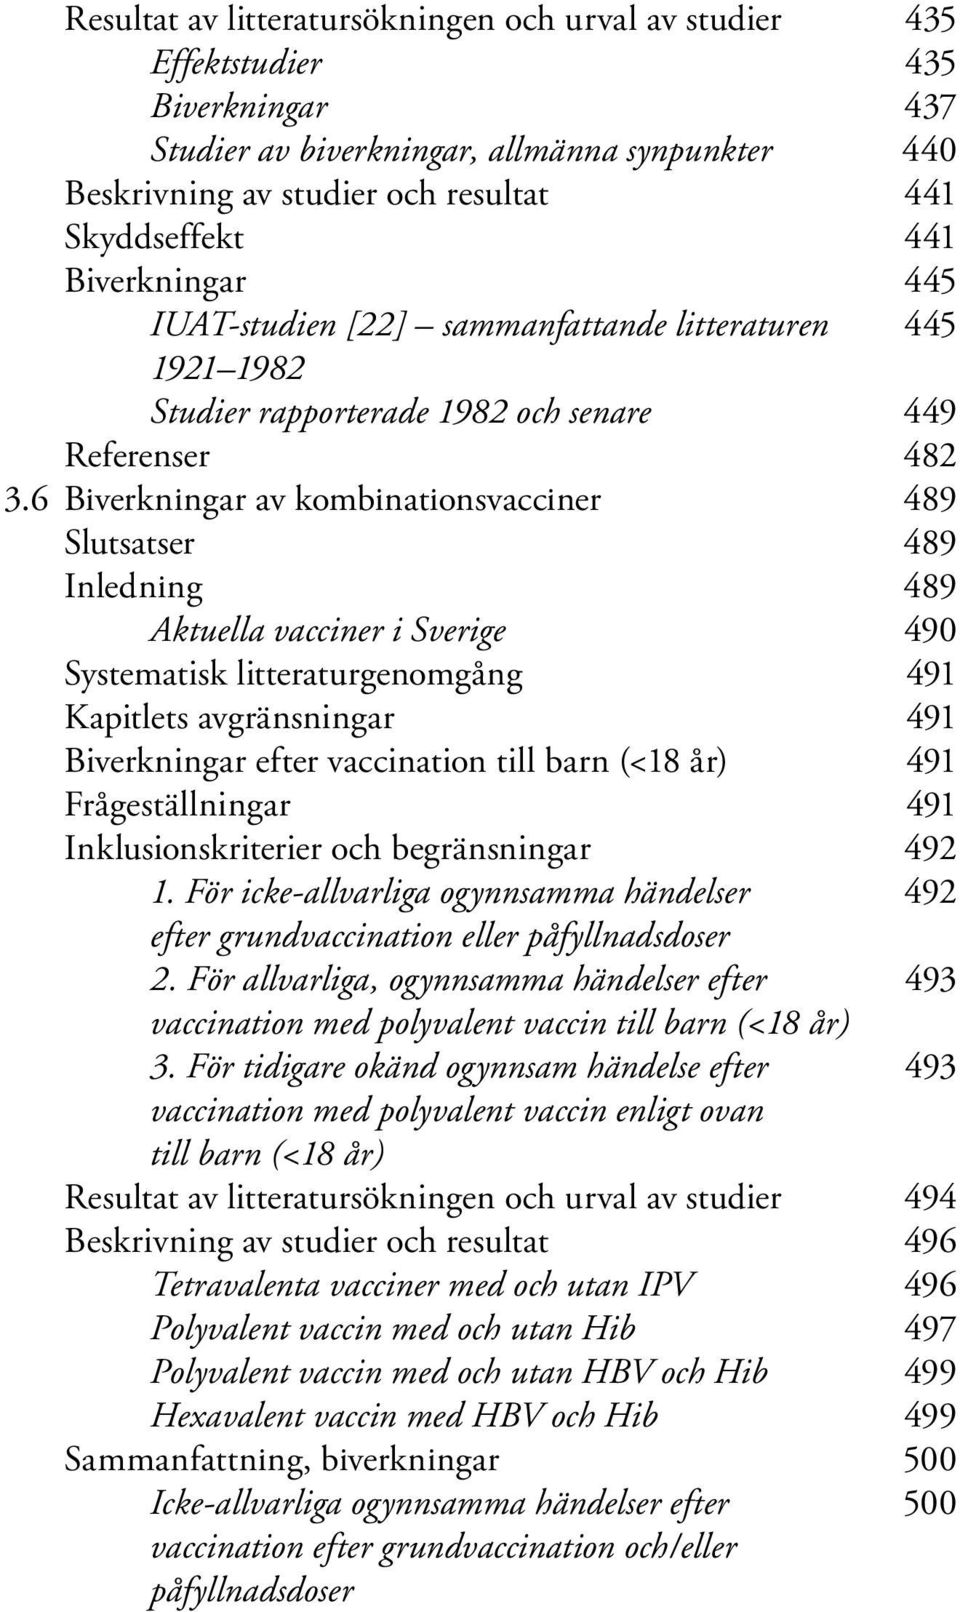 6 Biverkningar av kombinationsvacciner 489 Slutsatser 489 Inledning 489 Aktuella vacciner i Sverige 490 Systematisk litteraturgenomgång 491 Kapitlets avgränsningar 491 Biverkningar efter vaccination